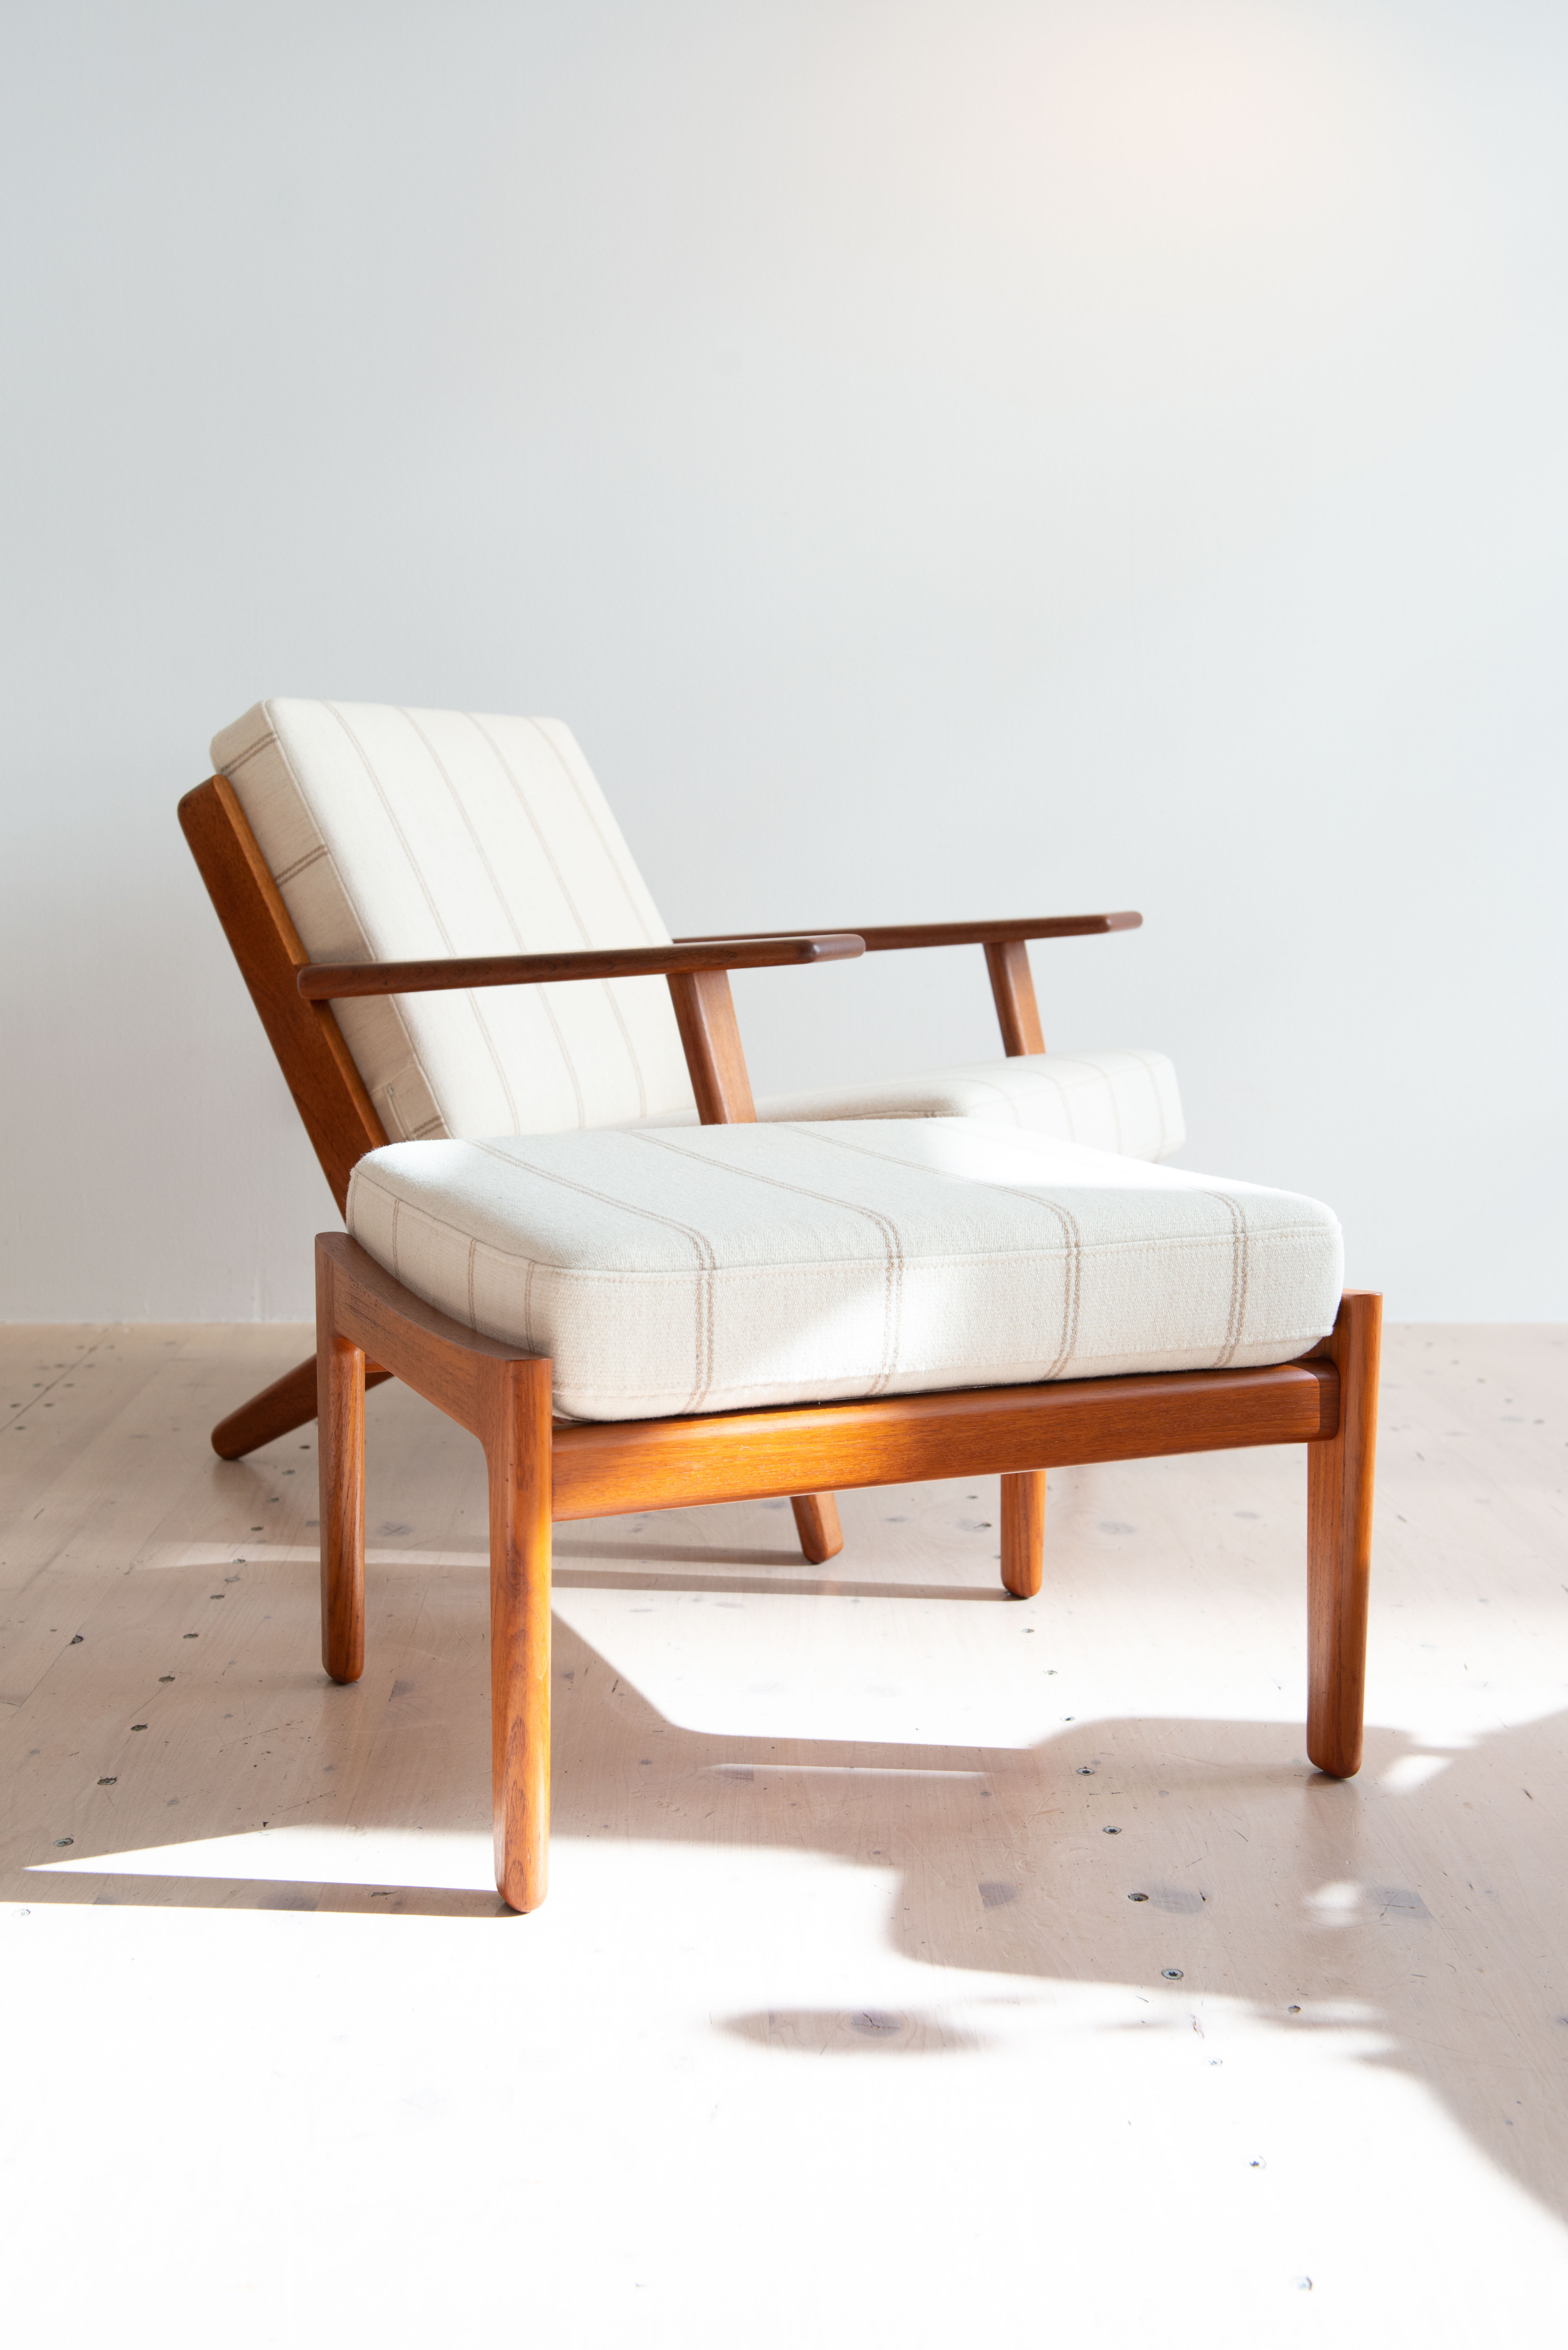 Hans J. Wegner GE 290 Lounge Chair in Teak. For Getama, Denmark, 1953. Available at heyday möbel, Grubenstrasse 19, 8045 Zürich.